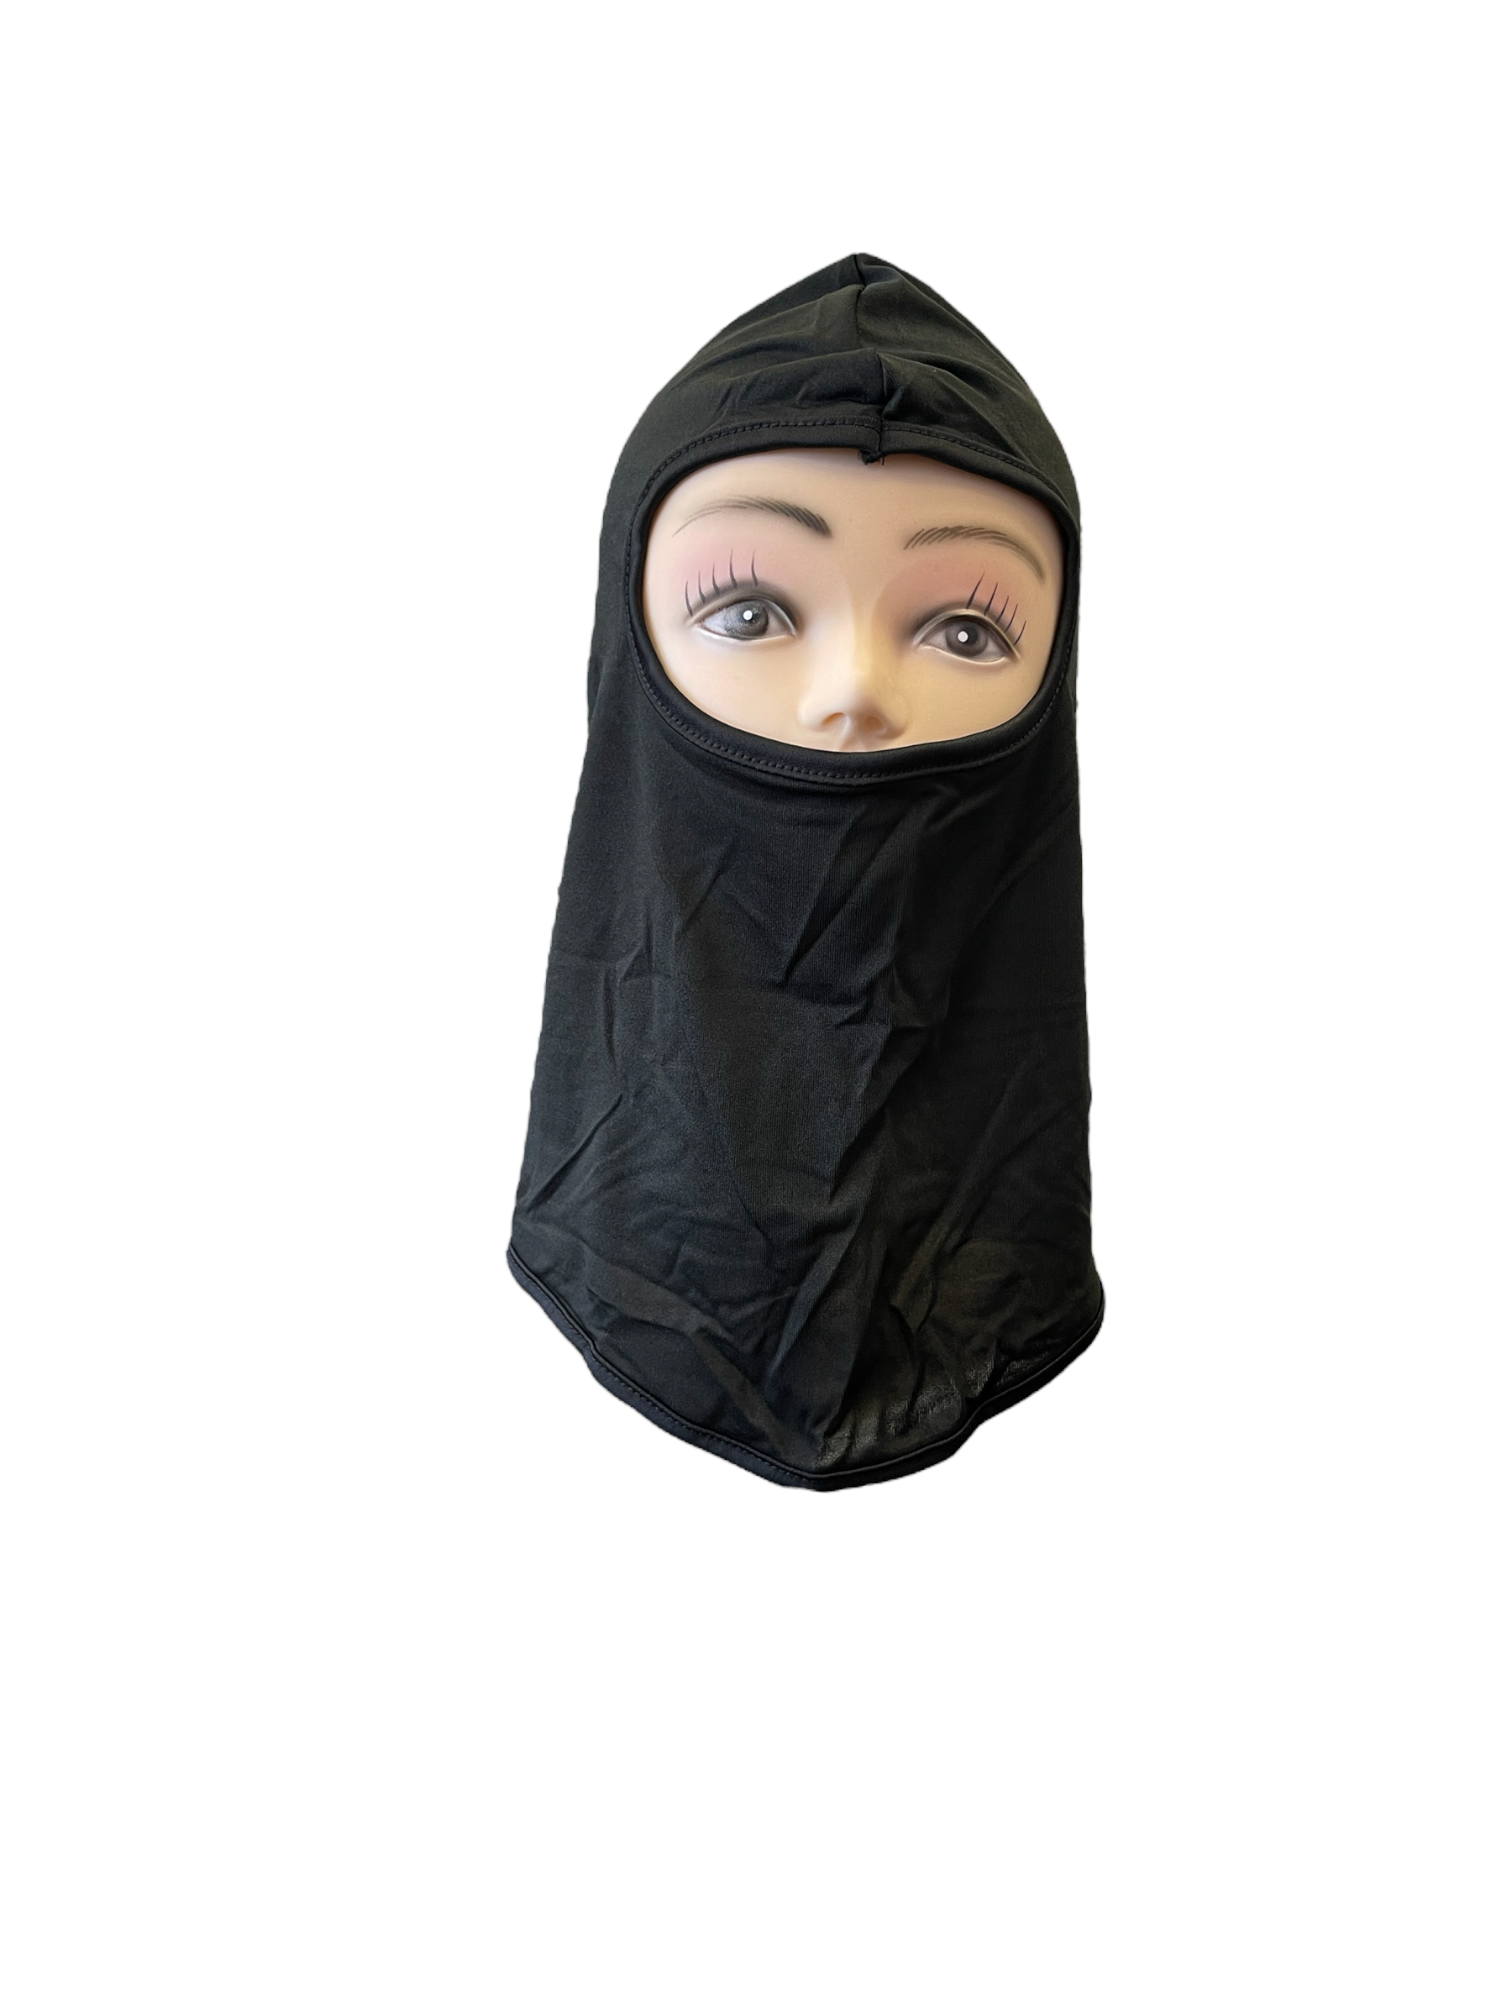 Pasamontañas ninja mask balaclava – Gali Company